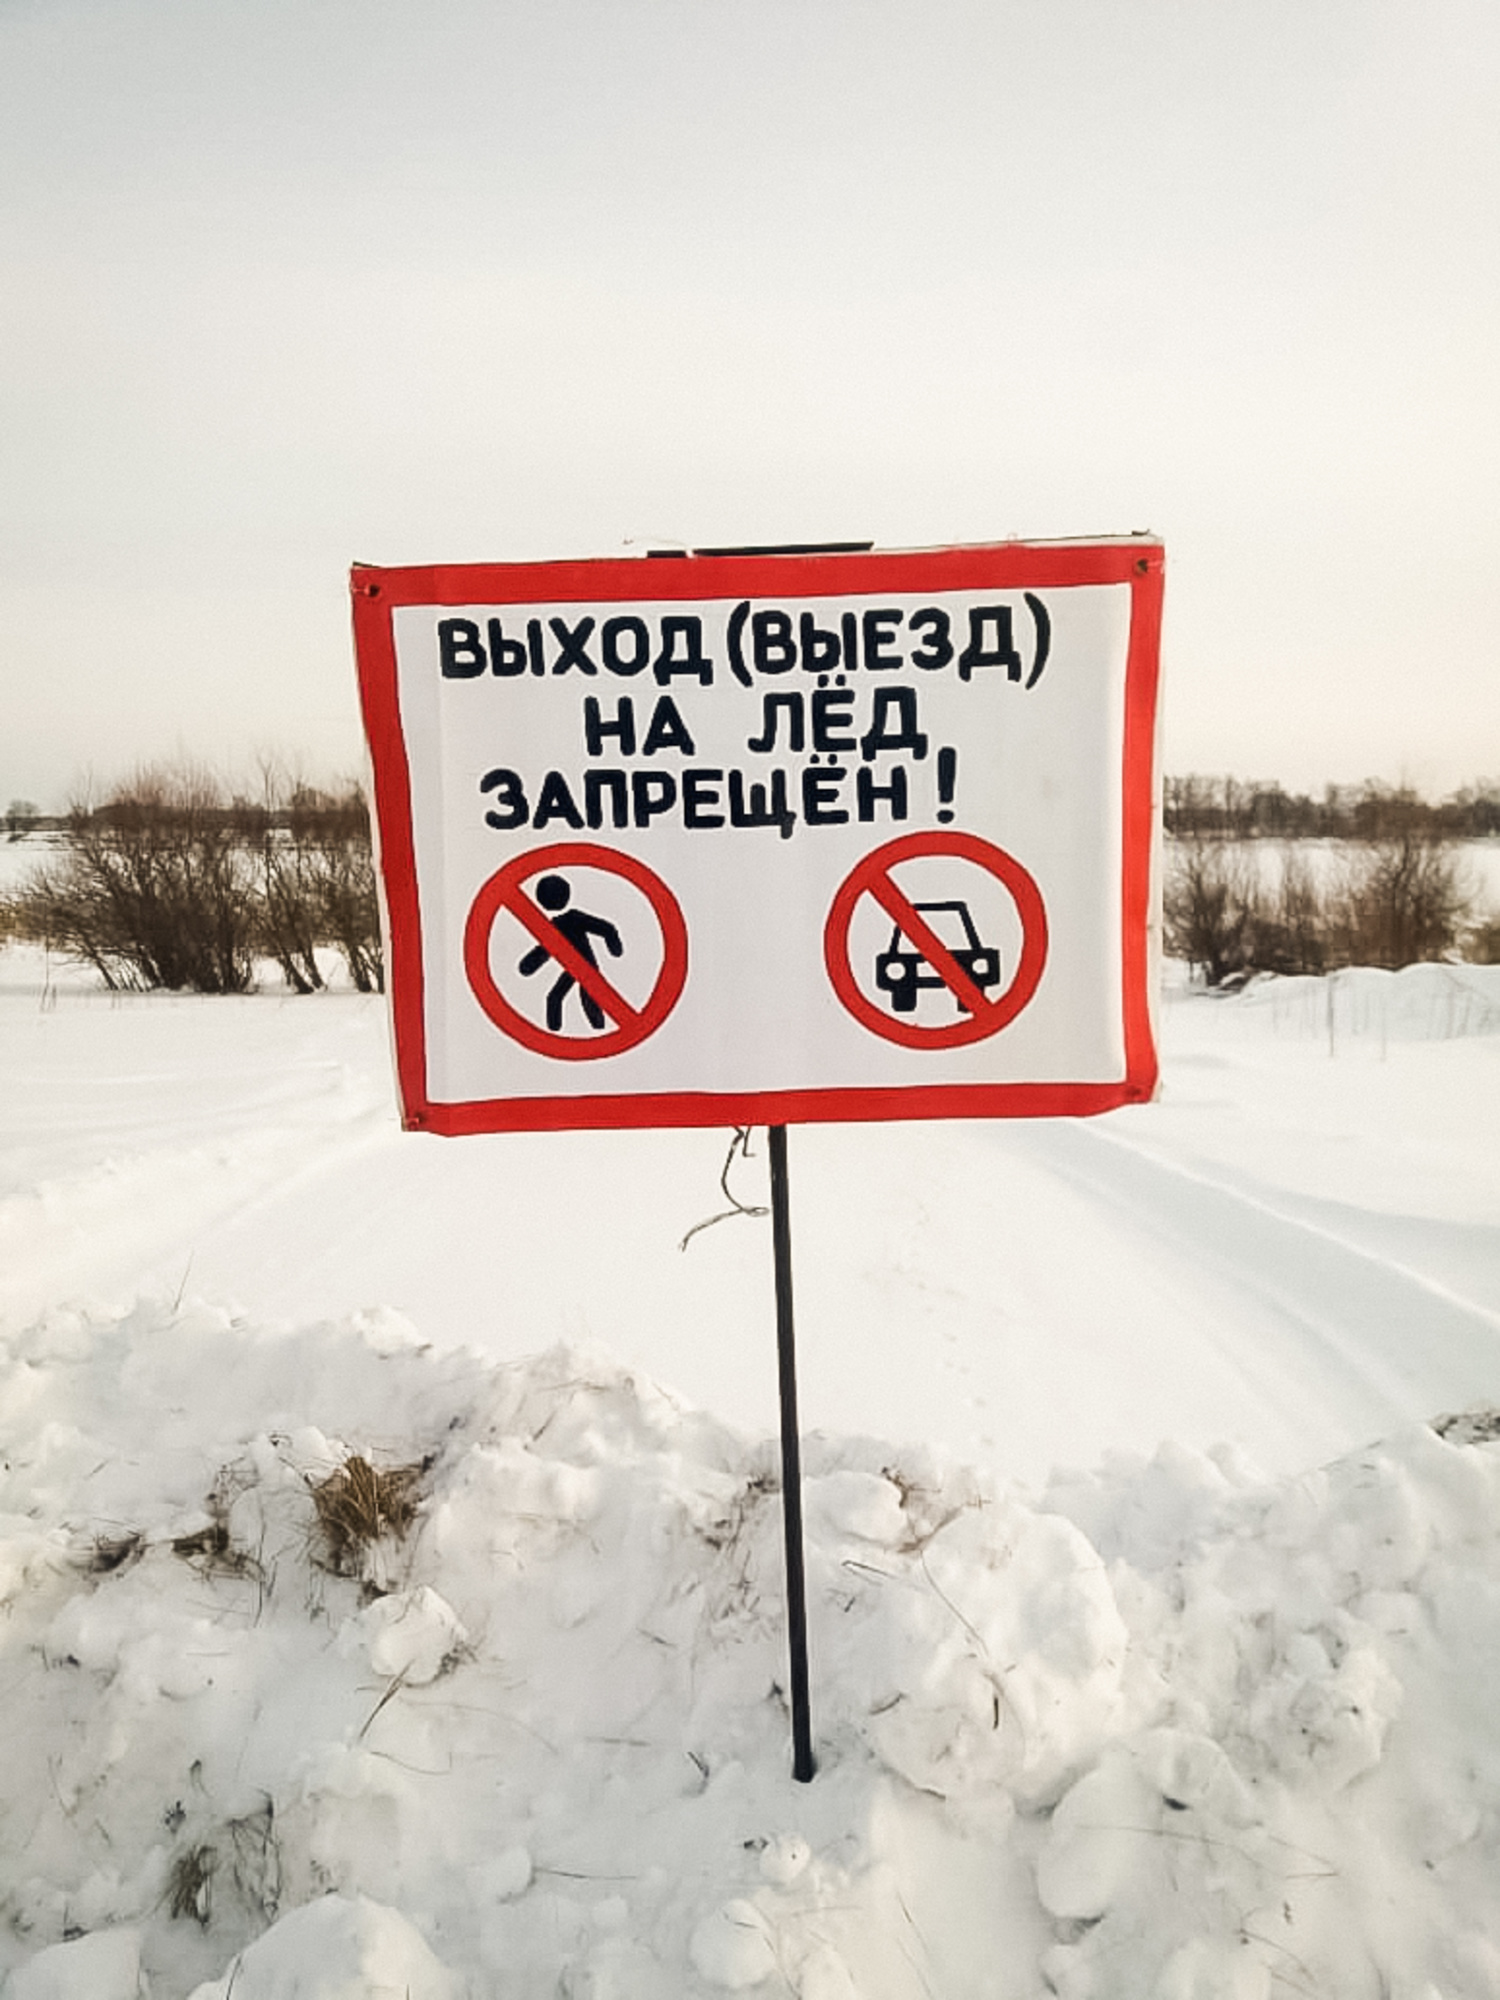 В Омской области обнаружили опасную незаконную переправу #Новости #Общество #Омск